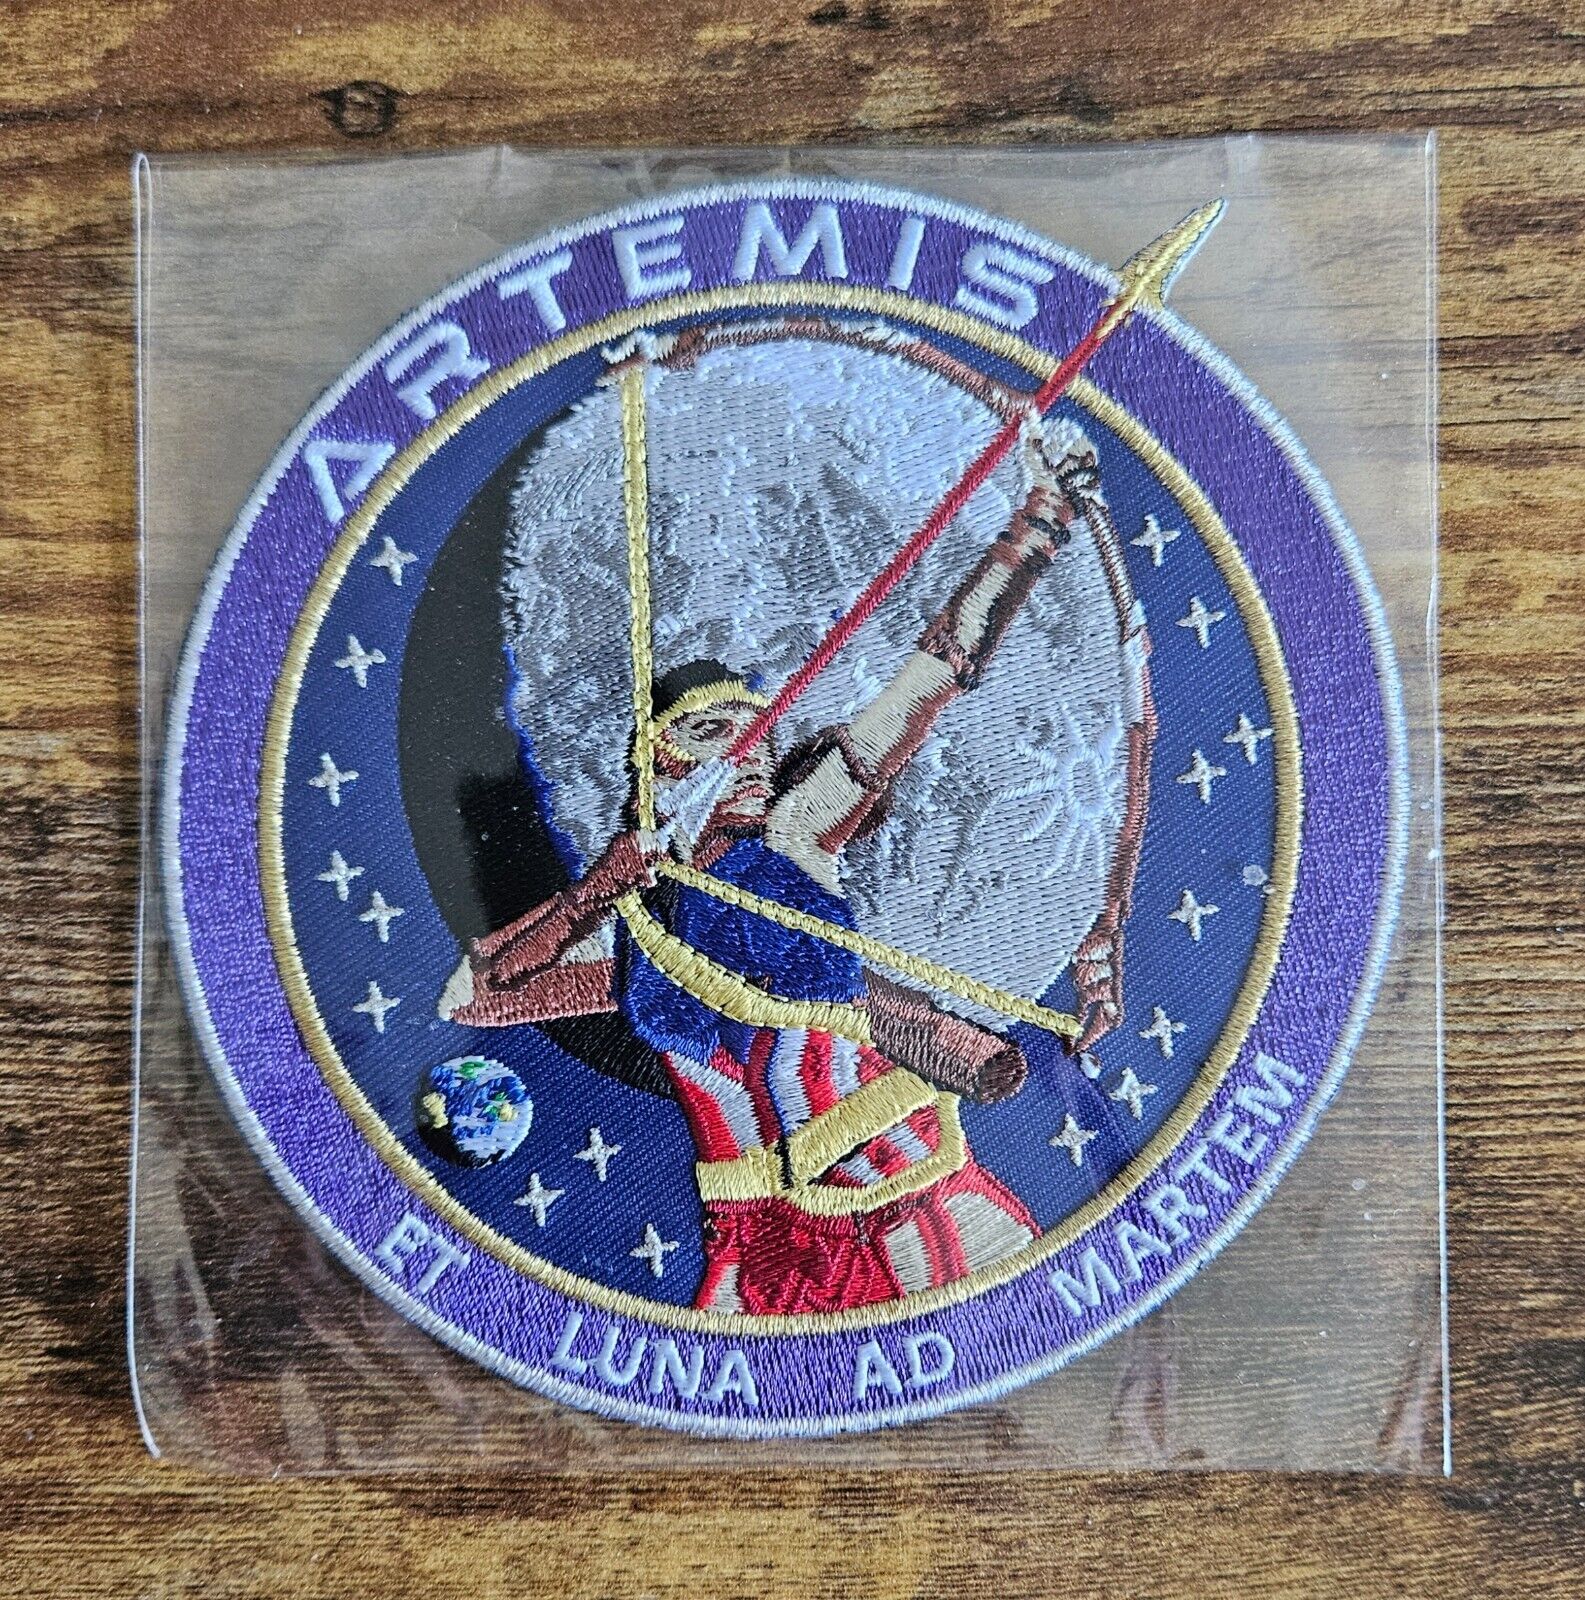 NASA Artemis Moon Exploration Space Program 2017 Souvenir Collectible Patch